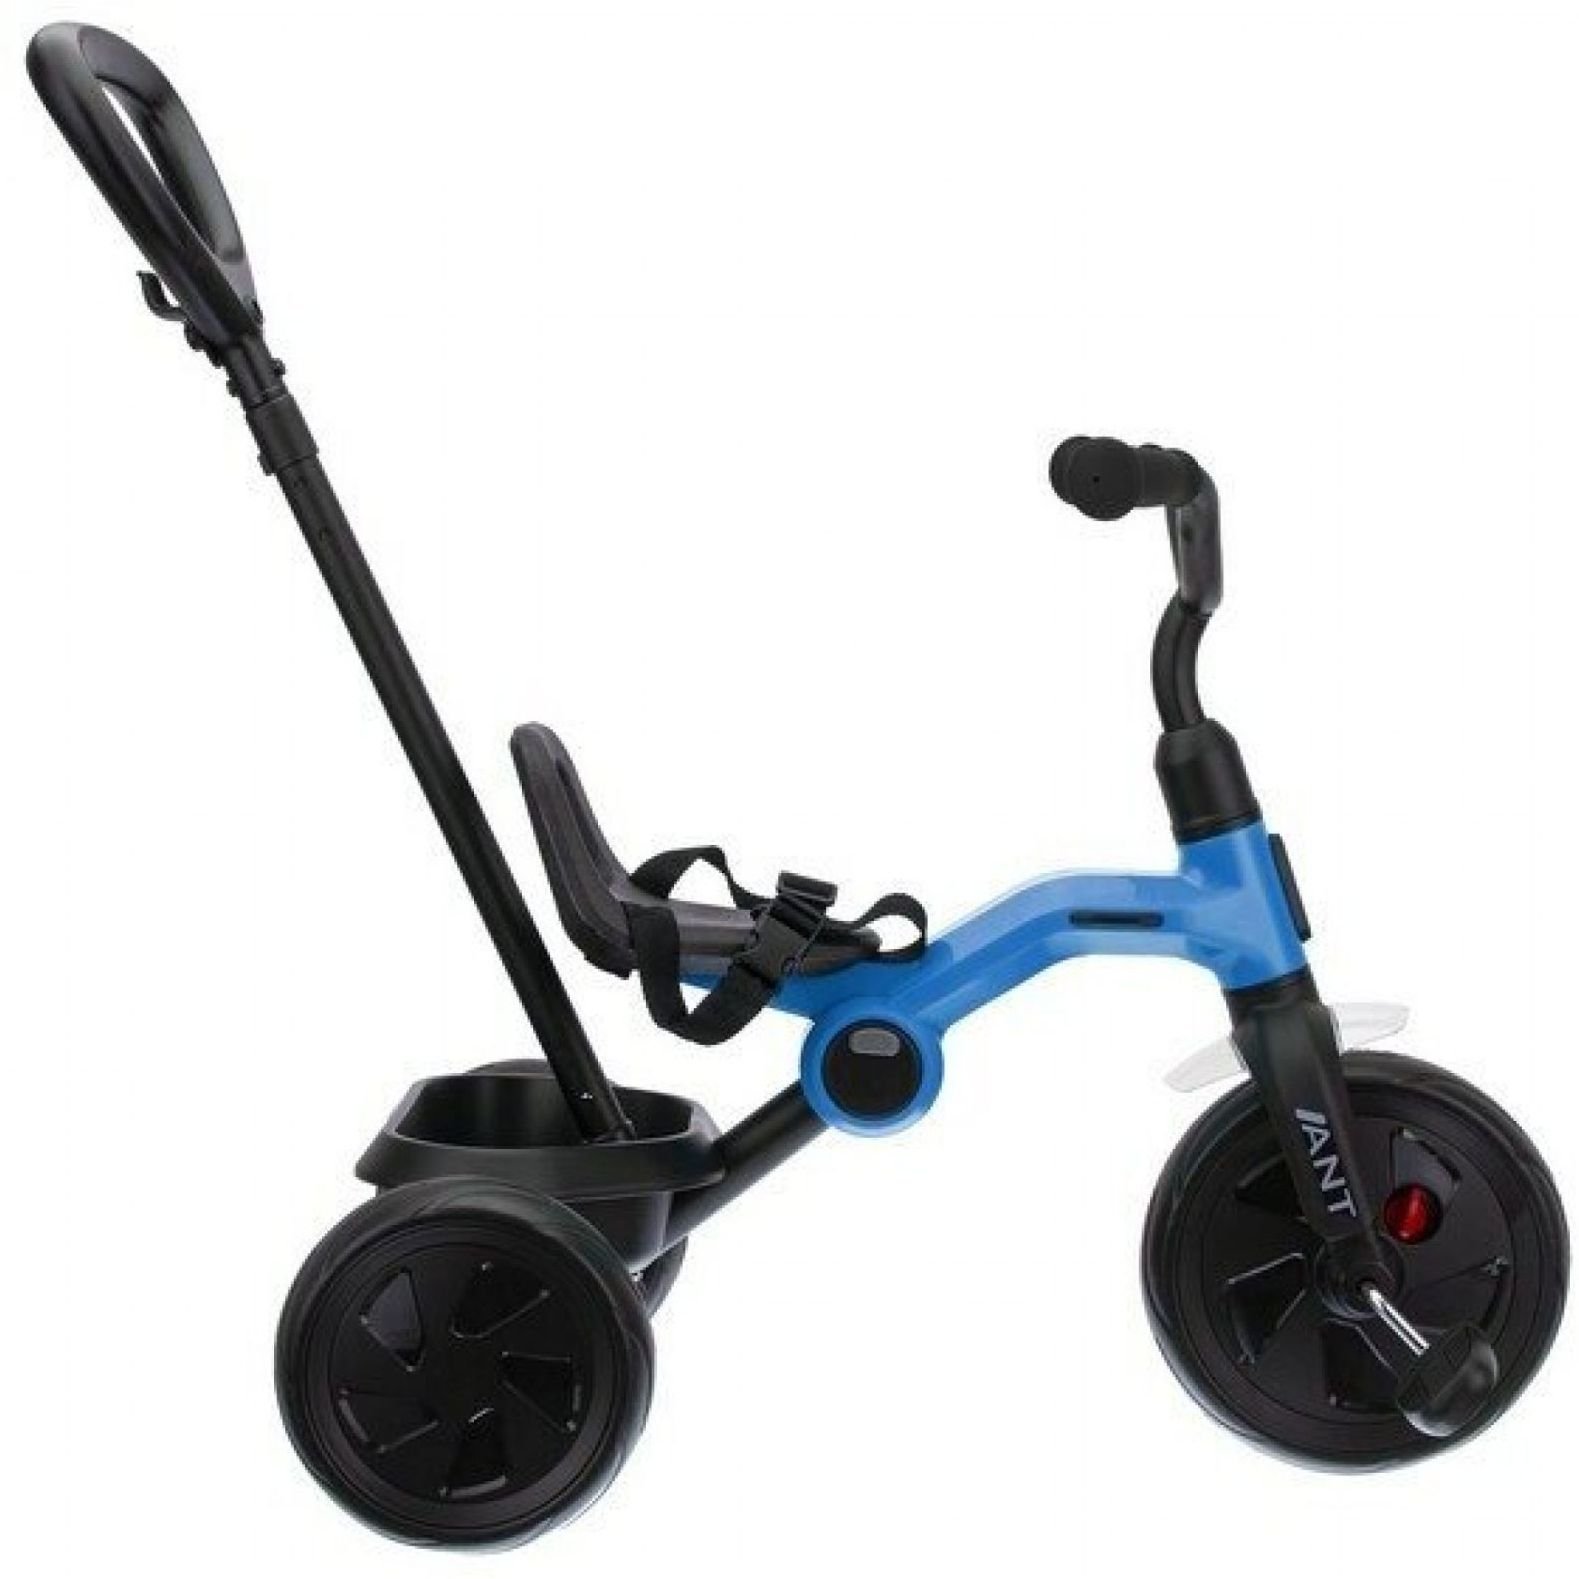 Дитячий триколісний складаний велосипед Qplay Ant+ Blue, синій (T190-2Ant+Blue) - фото 3